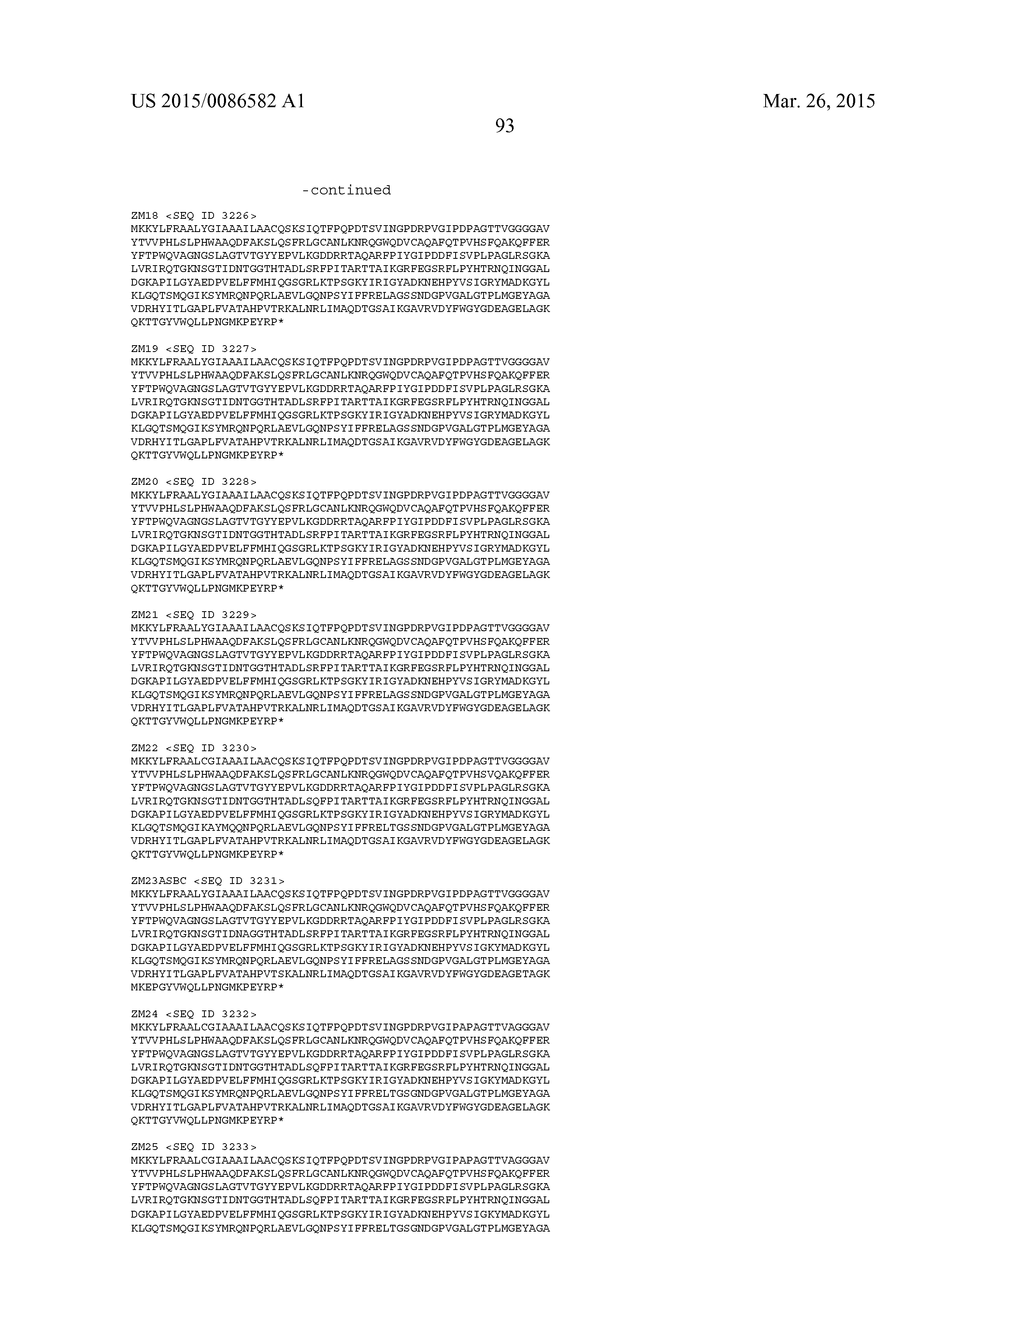 NEISSERIA MENINGITIDIS ANTIGENS AND COMPOSITIONS - diagram, schematic, and image 125